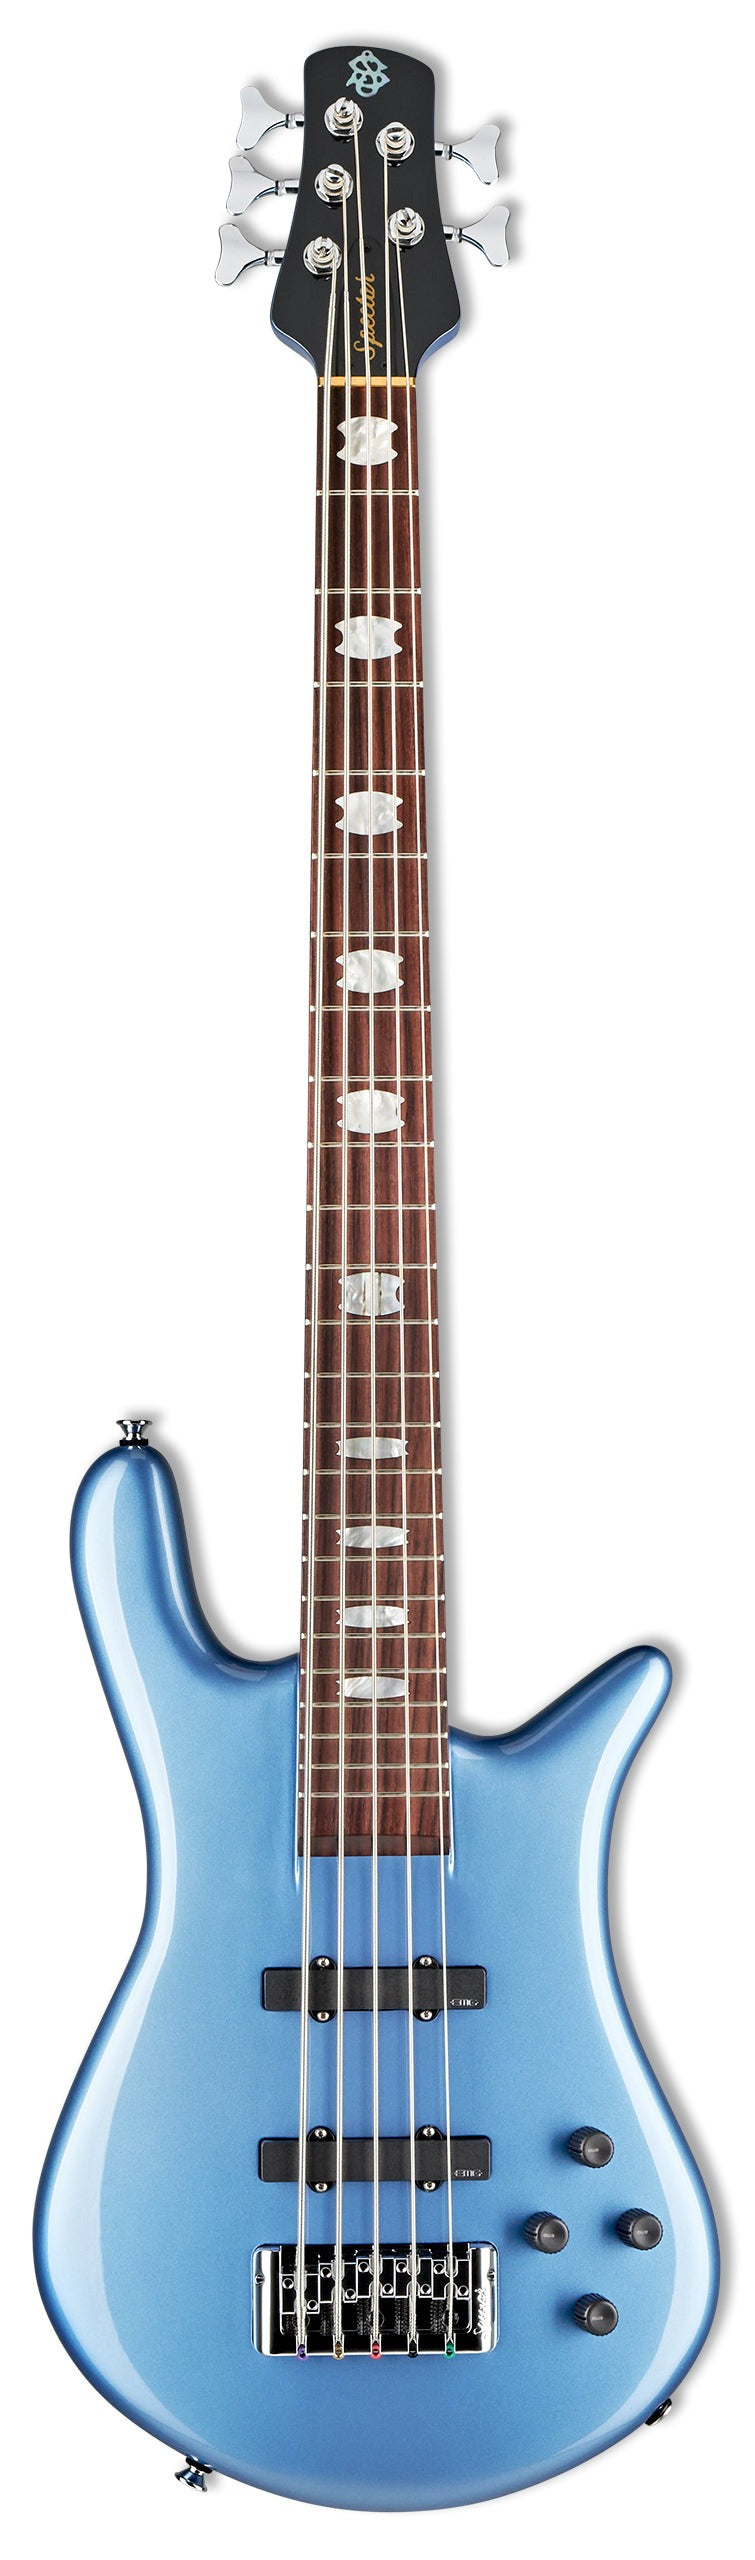 Spector EURO 5 CLASSIC Guitare basse à 5 cordes (bleu métallisé brillant)